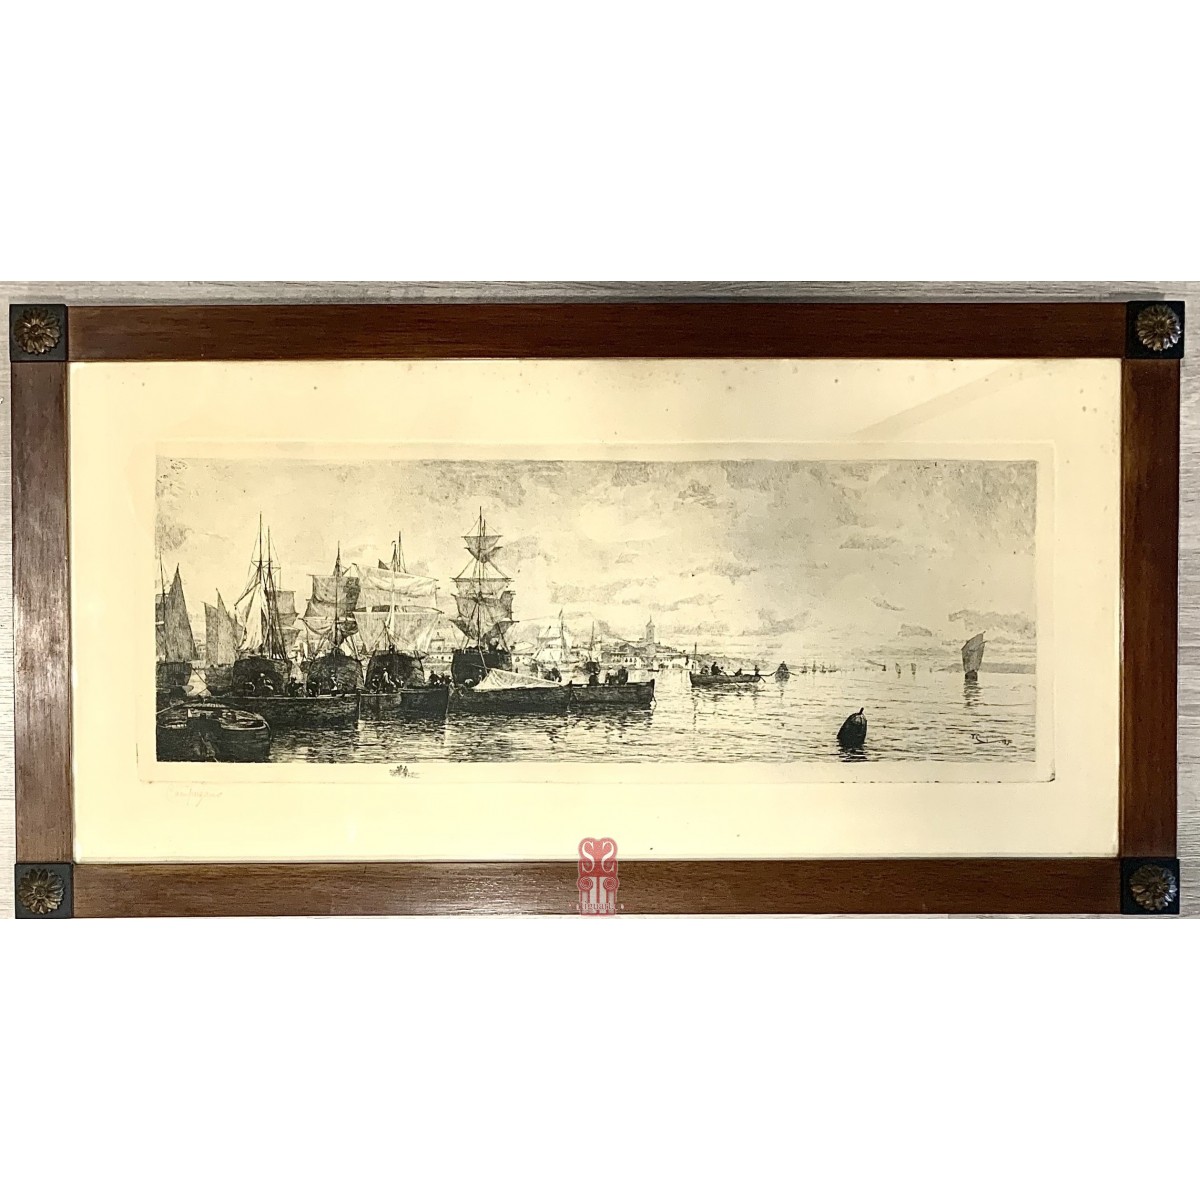 Marina, stampa acquaforte, T. Campuzano, XIX secolo